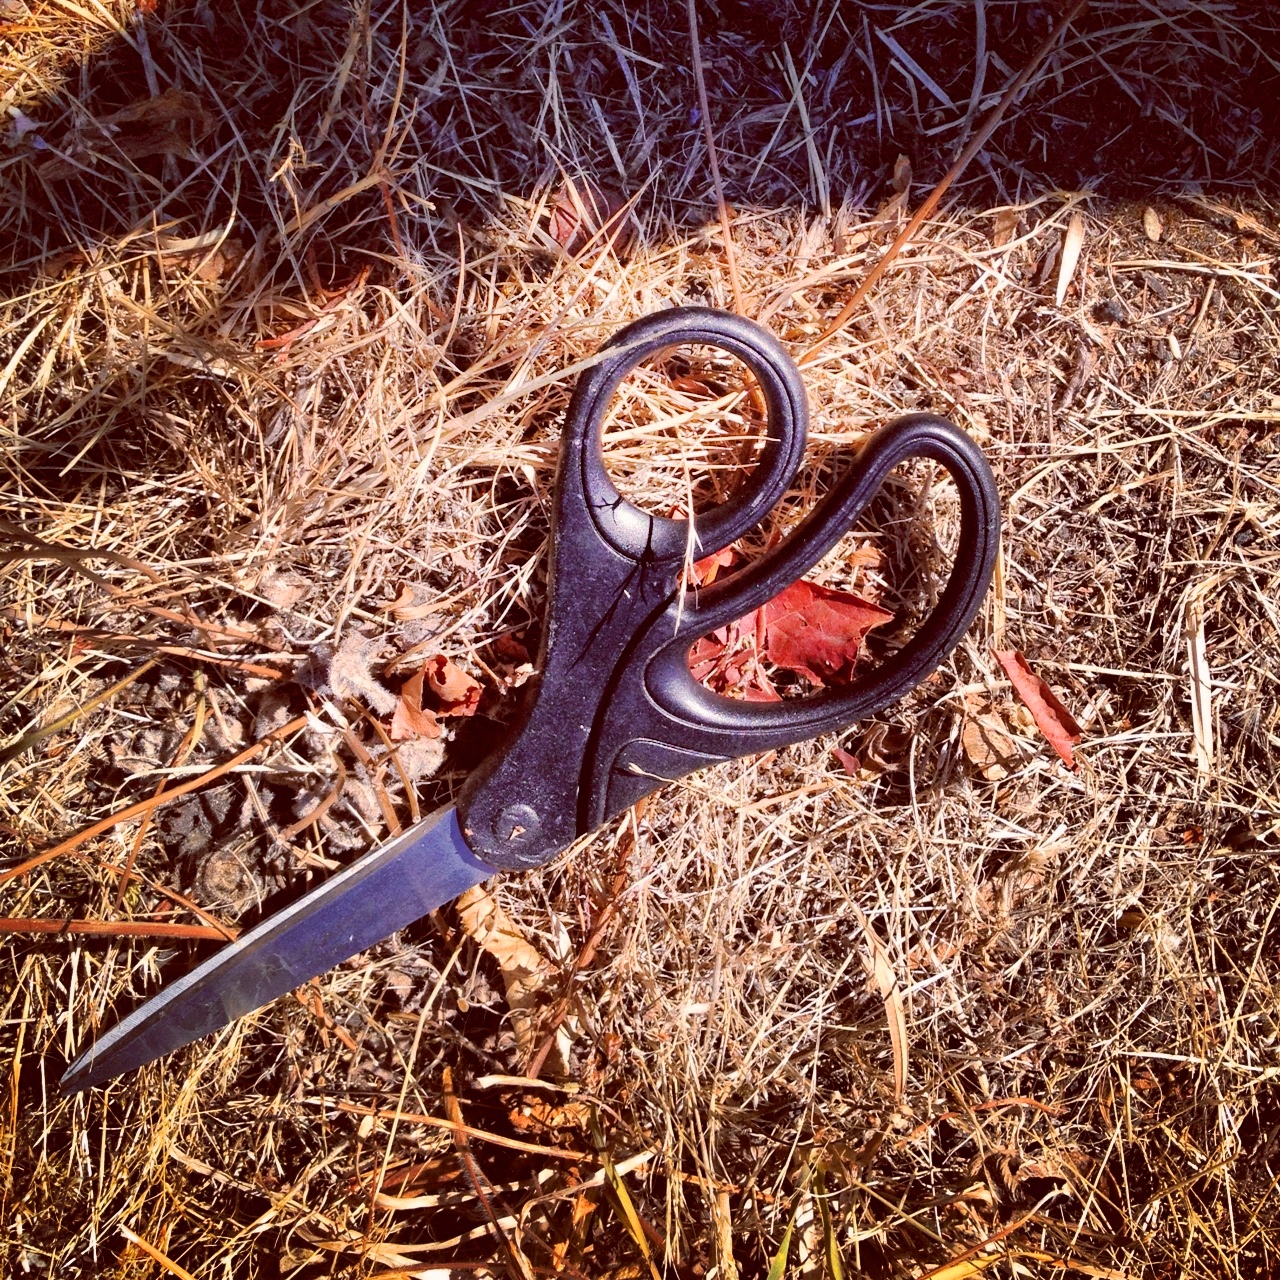 scissors found